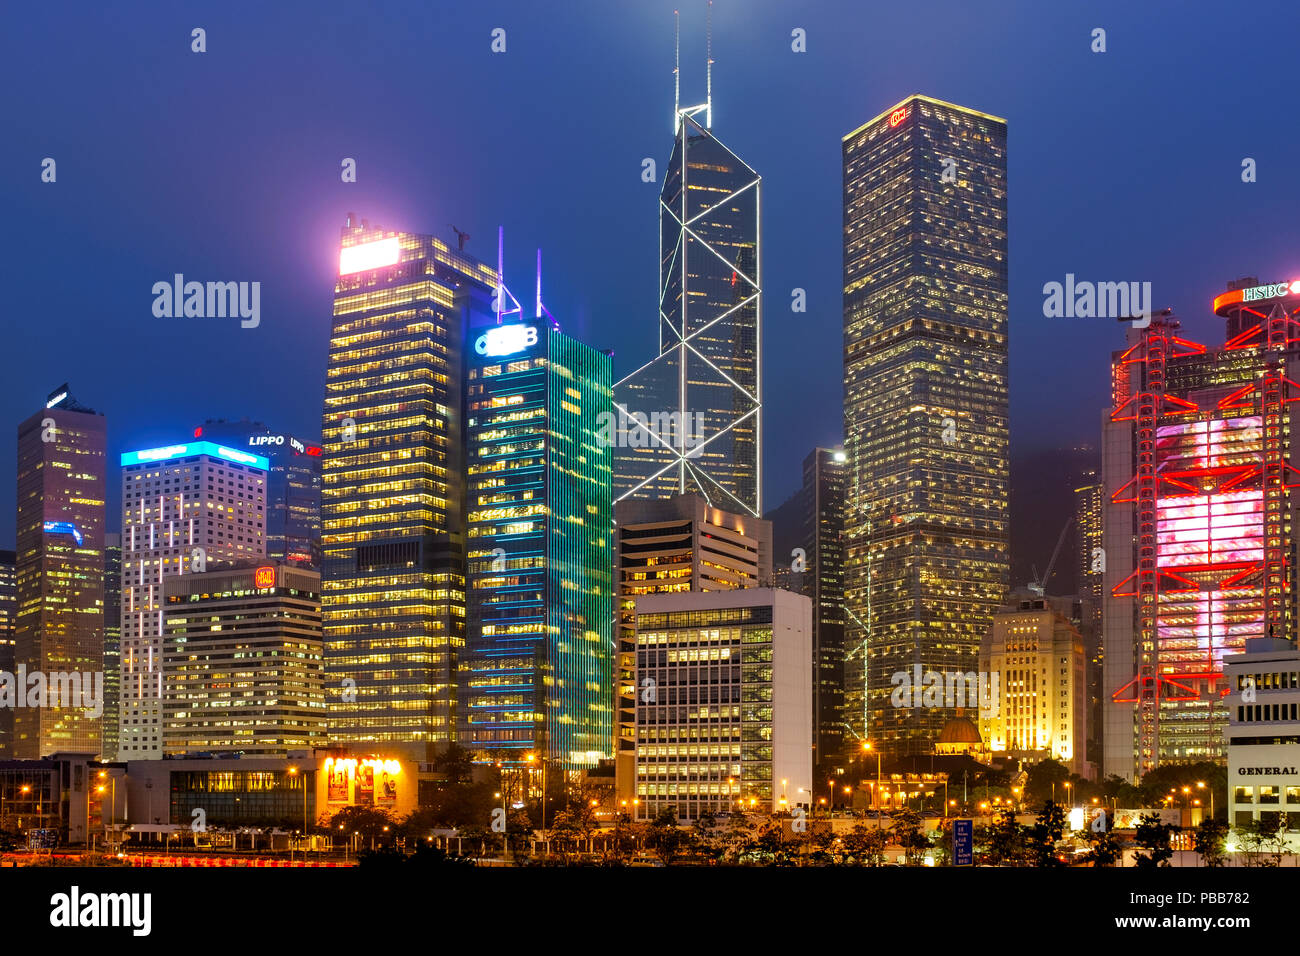 L'île de Hong Kong skyline vue de l'embarcadère de ferry de central, l'île de Hong Kong, Chine Banque D'Images